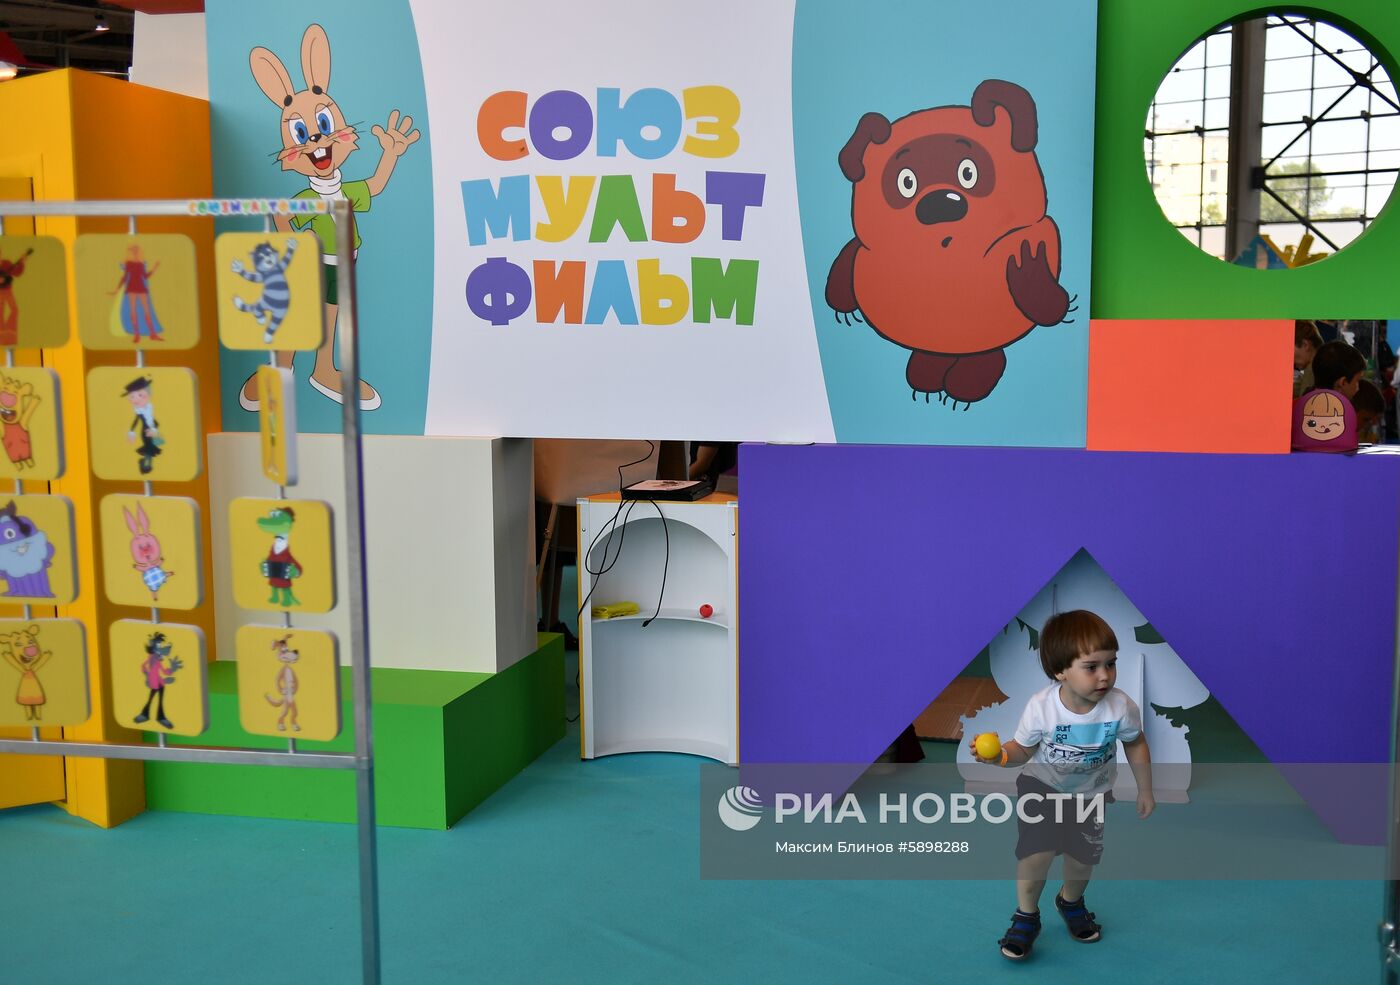 Фестиваль анимации и развлечений "Мультимир" на ВДНХ